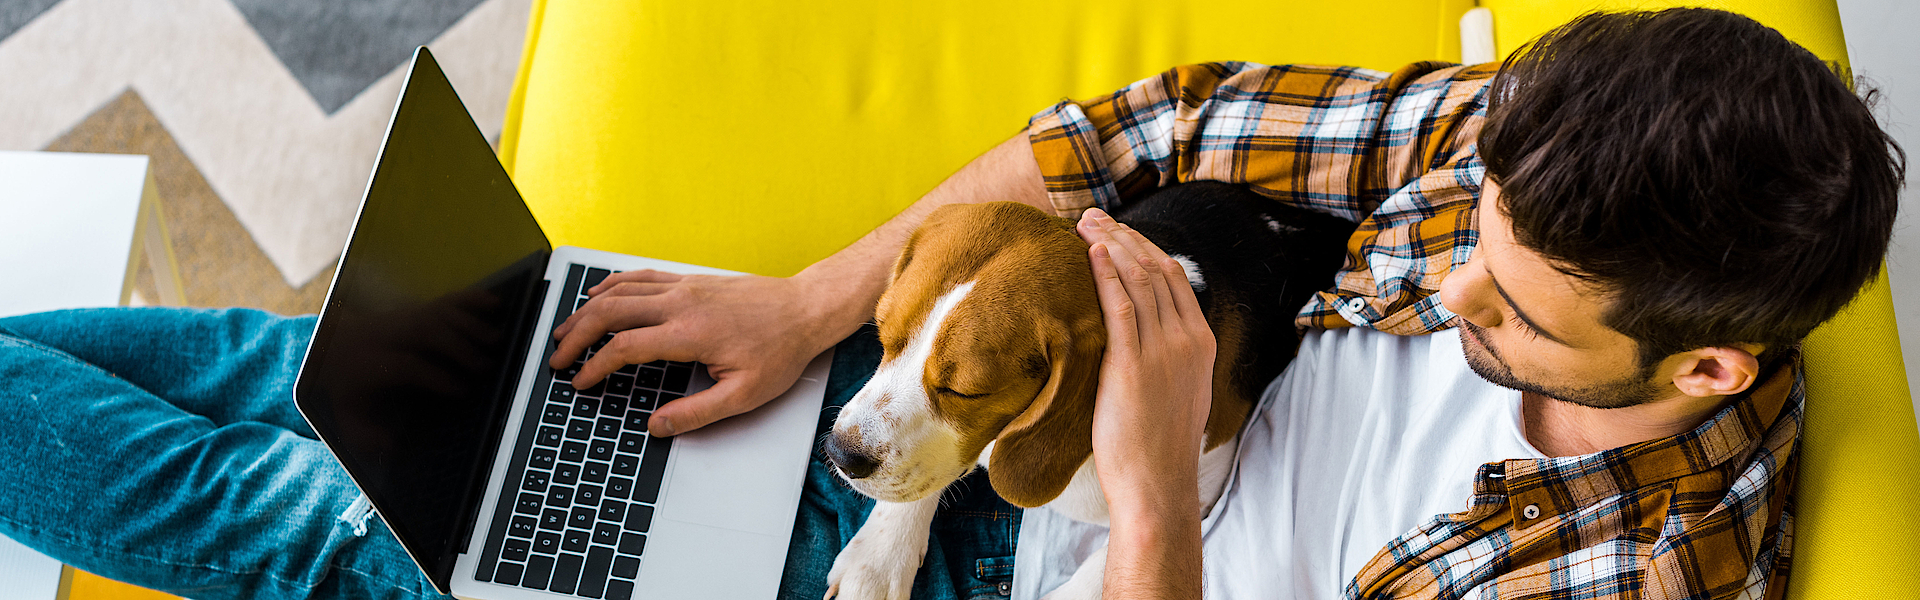 Ein Mann sitzt auf einem gelbe Sofa. Auf seinem Schoß liegt ein Hund. Er hat einen Laptop und surft im Internet.